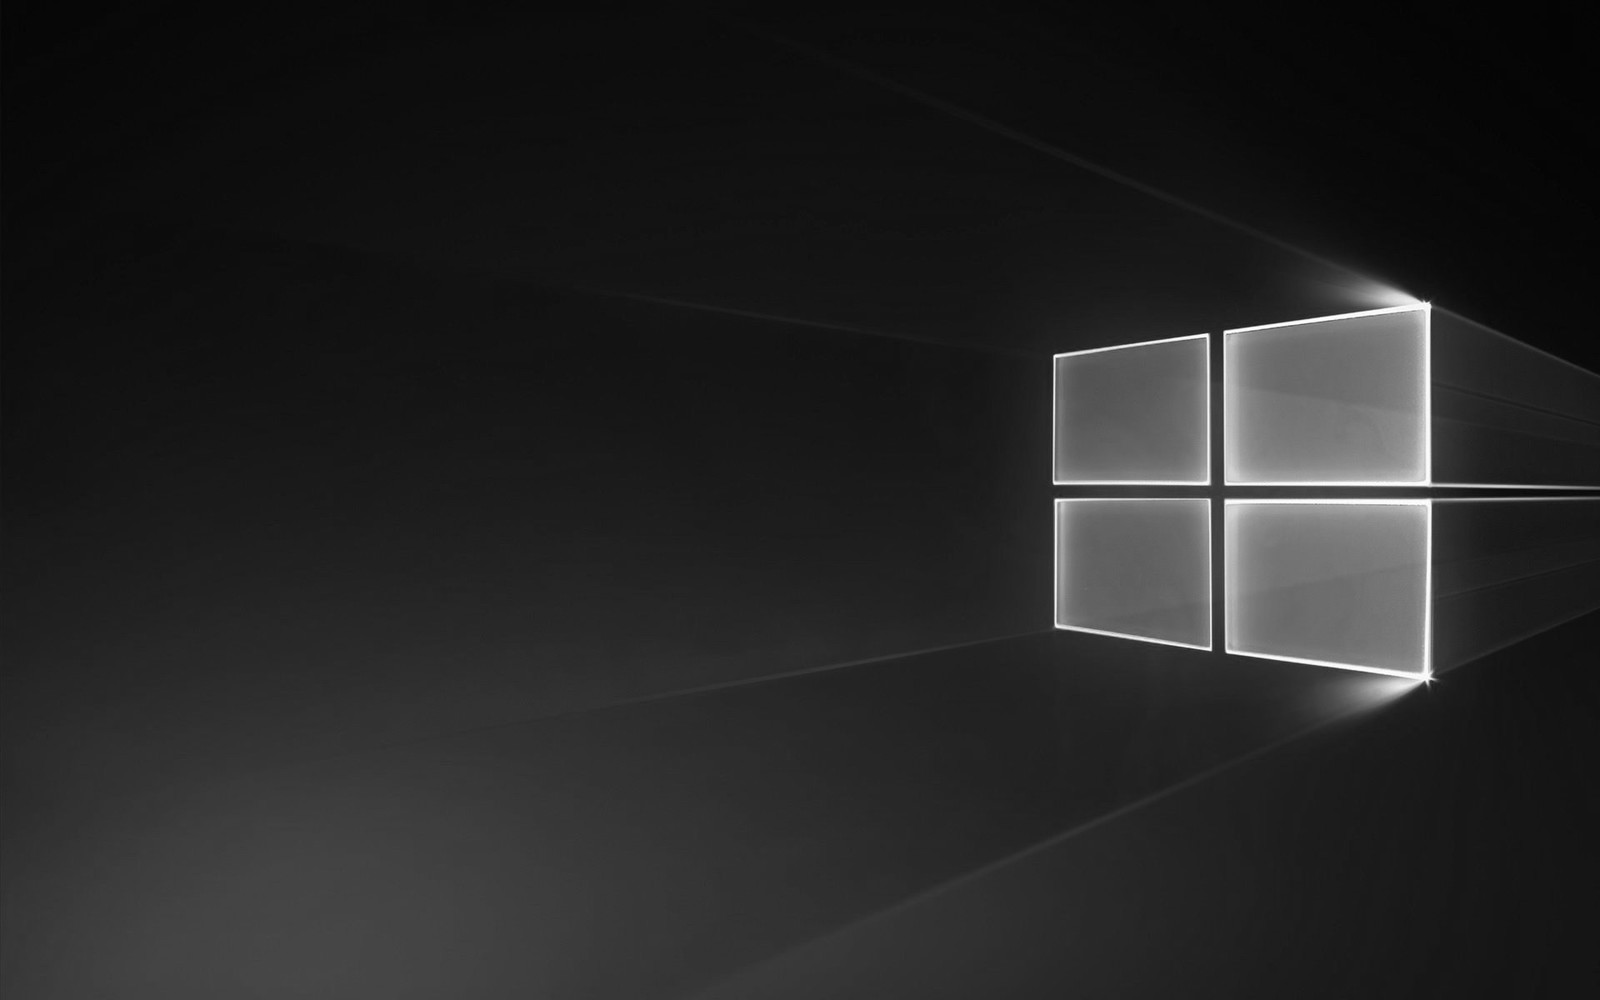 Aktualizácia systému Windows 10. októbra údajne spôsobuje problémy s ovládačmi systému Windows Update a spoločnosť Microsoft obviňuje spoločnosť Intel z dôvodu nehody